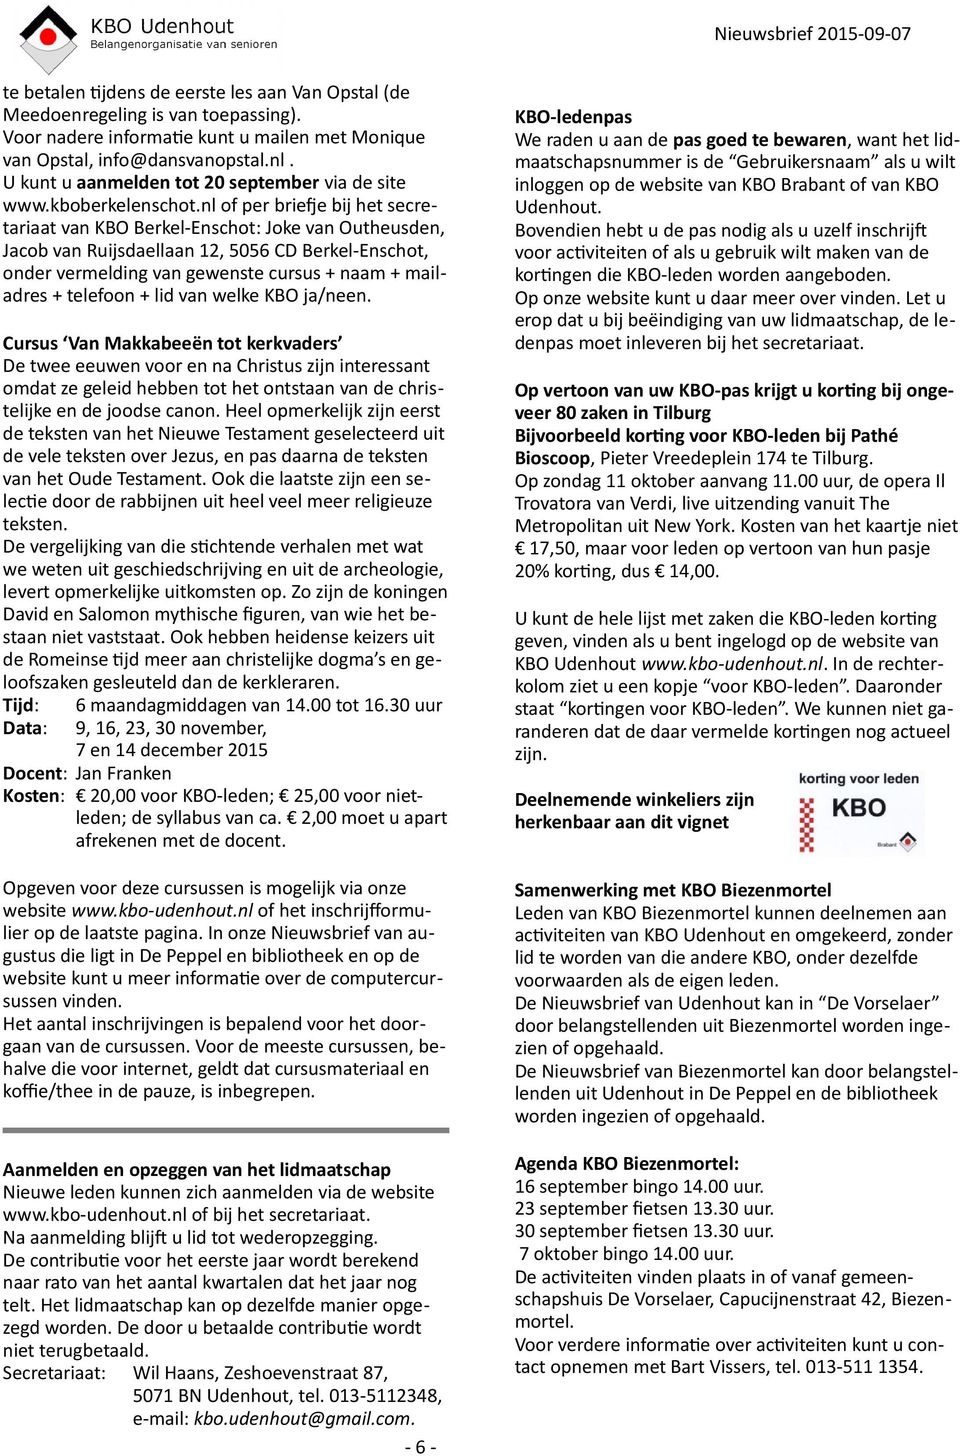 nl of per briefje bij het secretariaat van KBO Berkel-Enschot: Joke van Outheusden, Jacob van Ruijsdaellaan 12, 5056 CD Berkel-Enschot, onder vermelding van gewenste cursus + naam + mailadres +